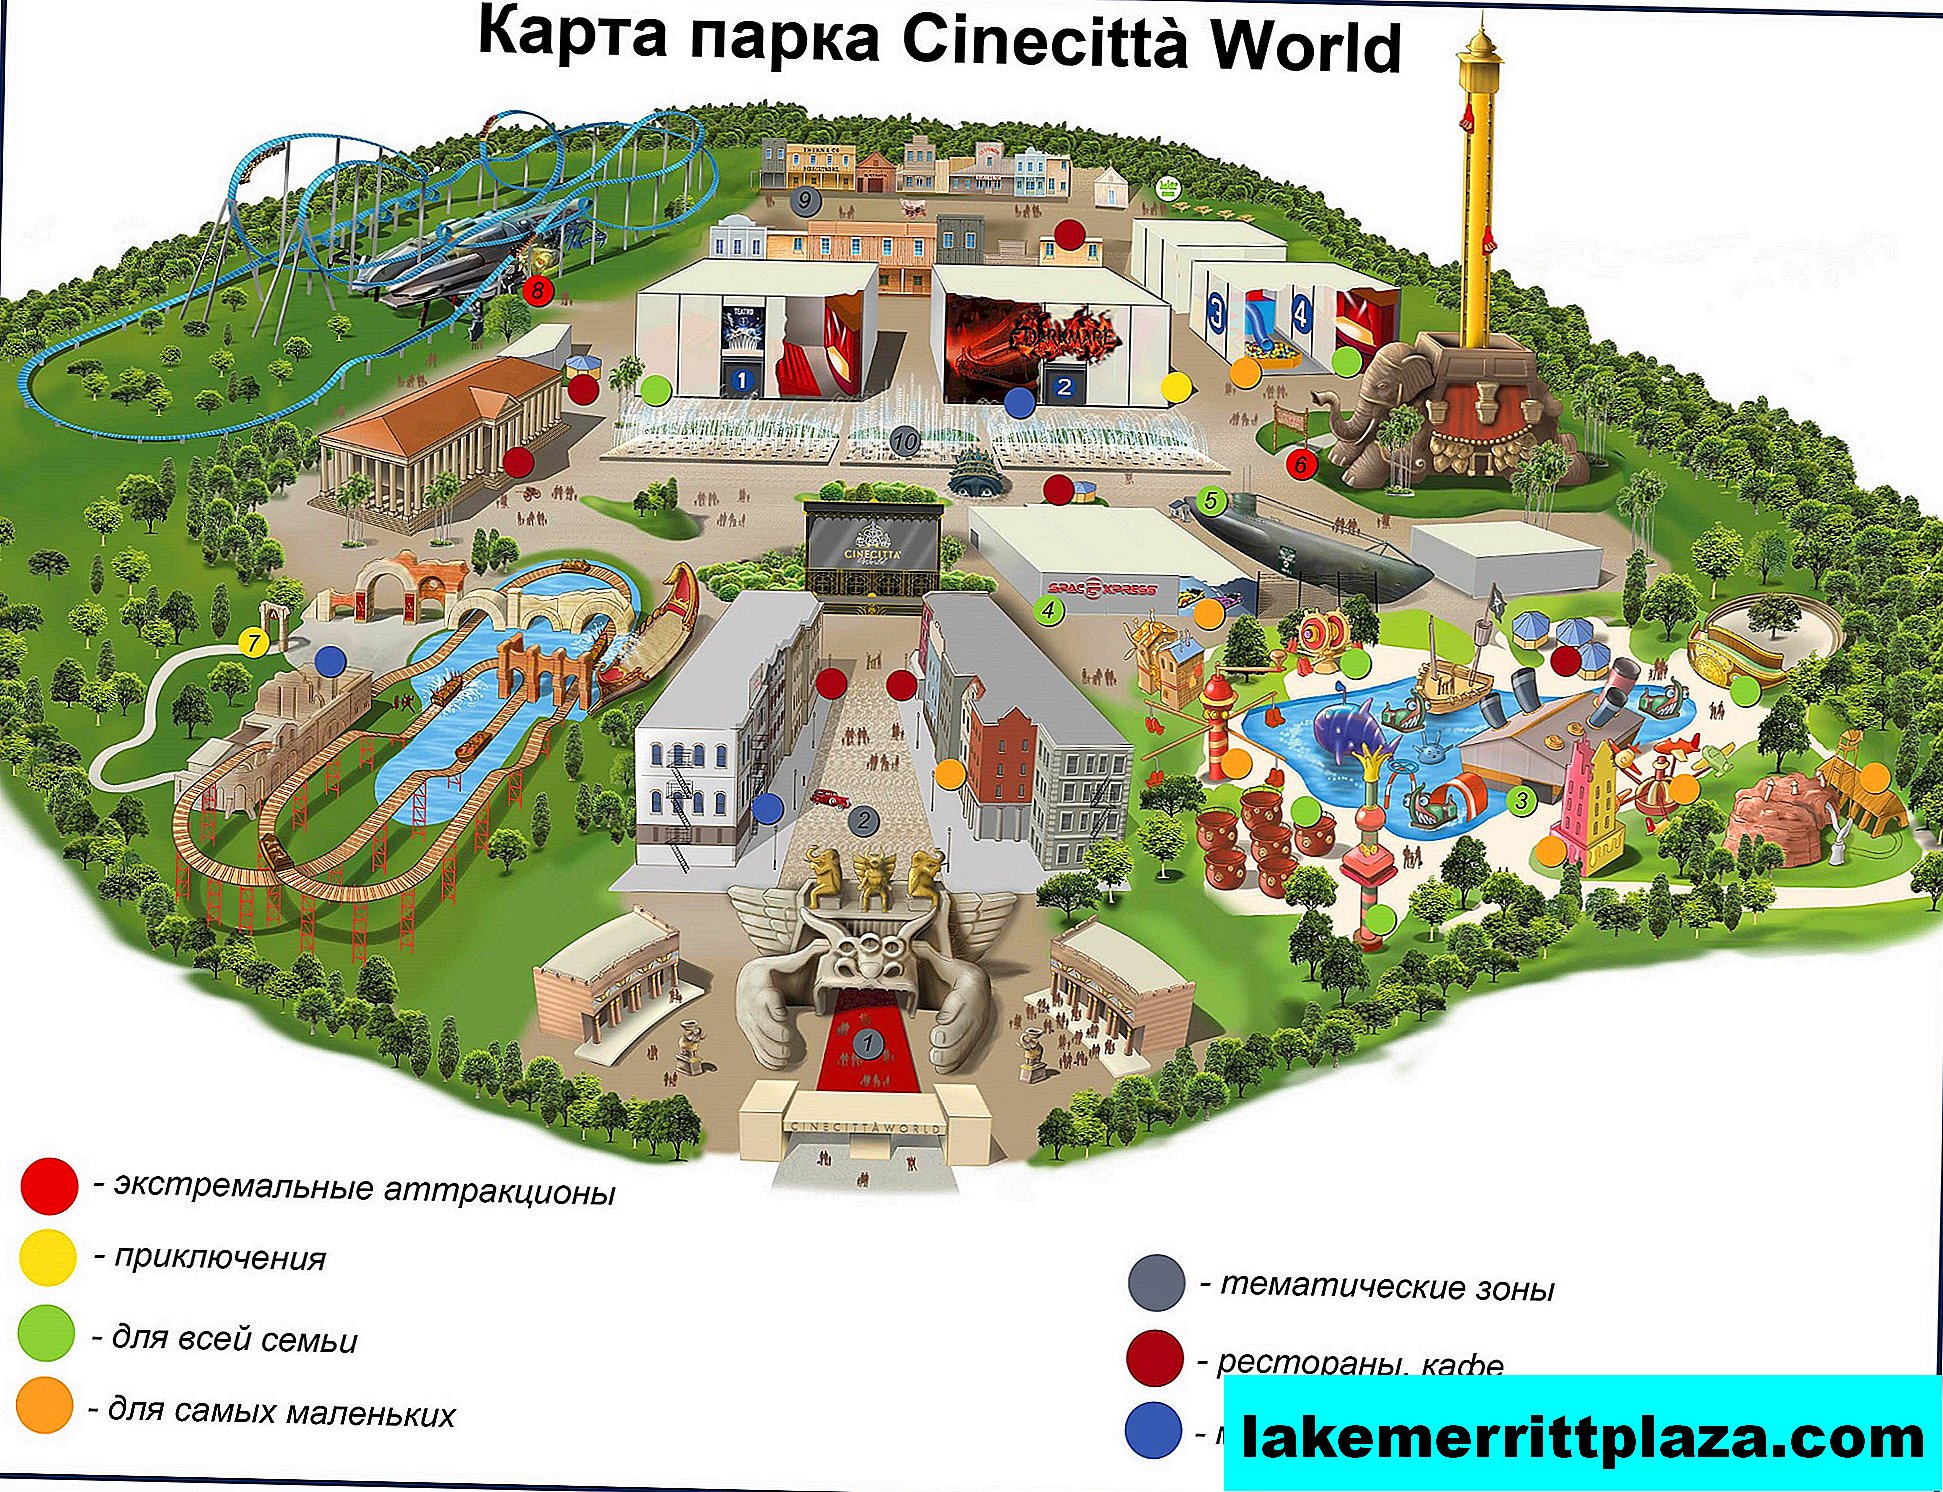 Cinechitta World - o primeiro parque de cinema da Itália para crianças e adultos